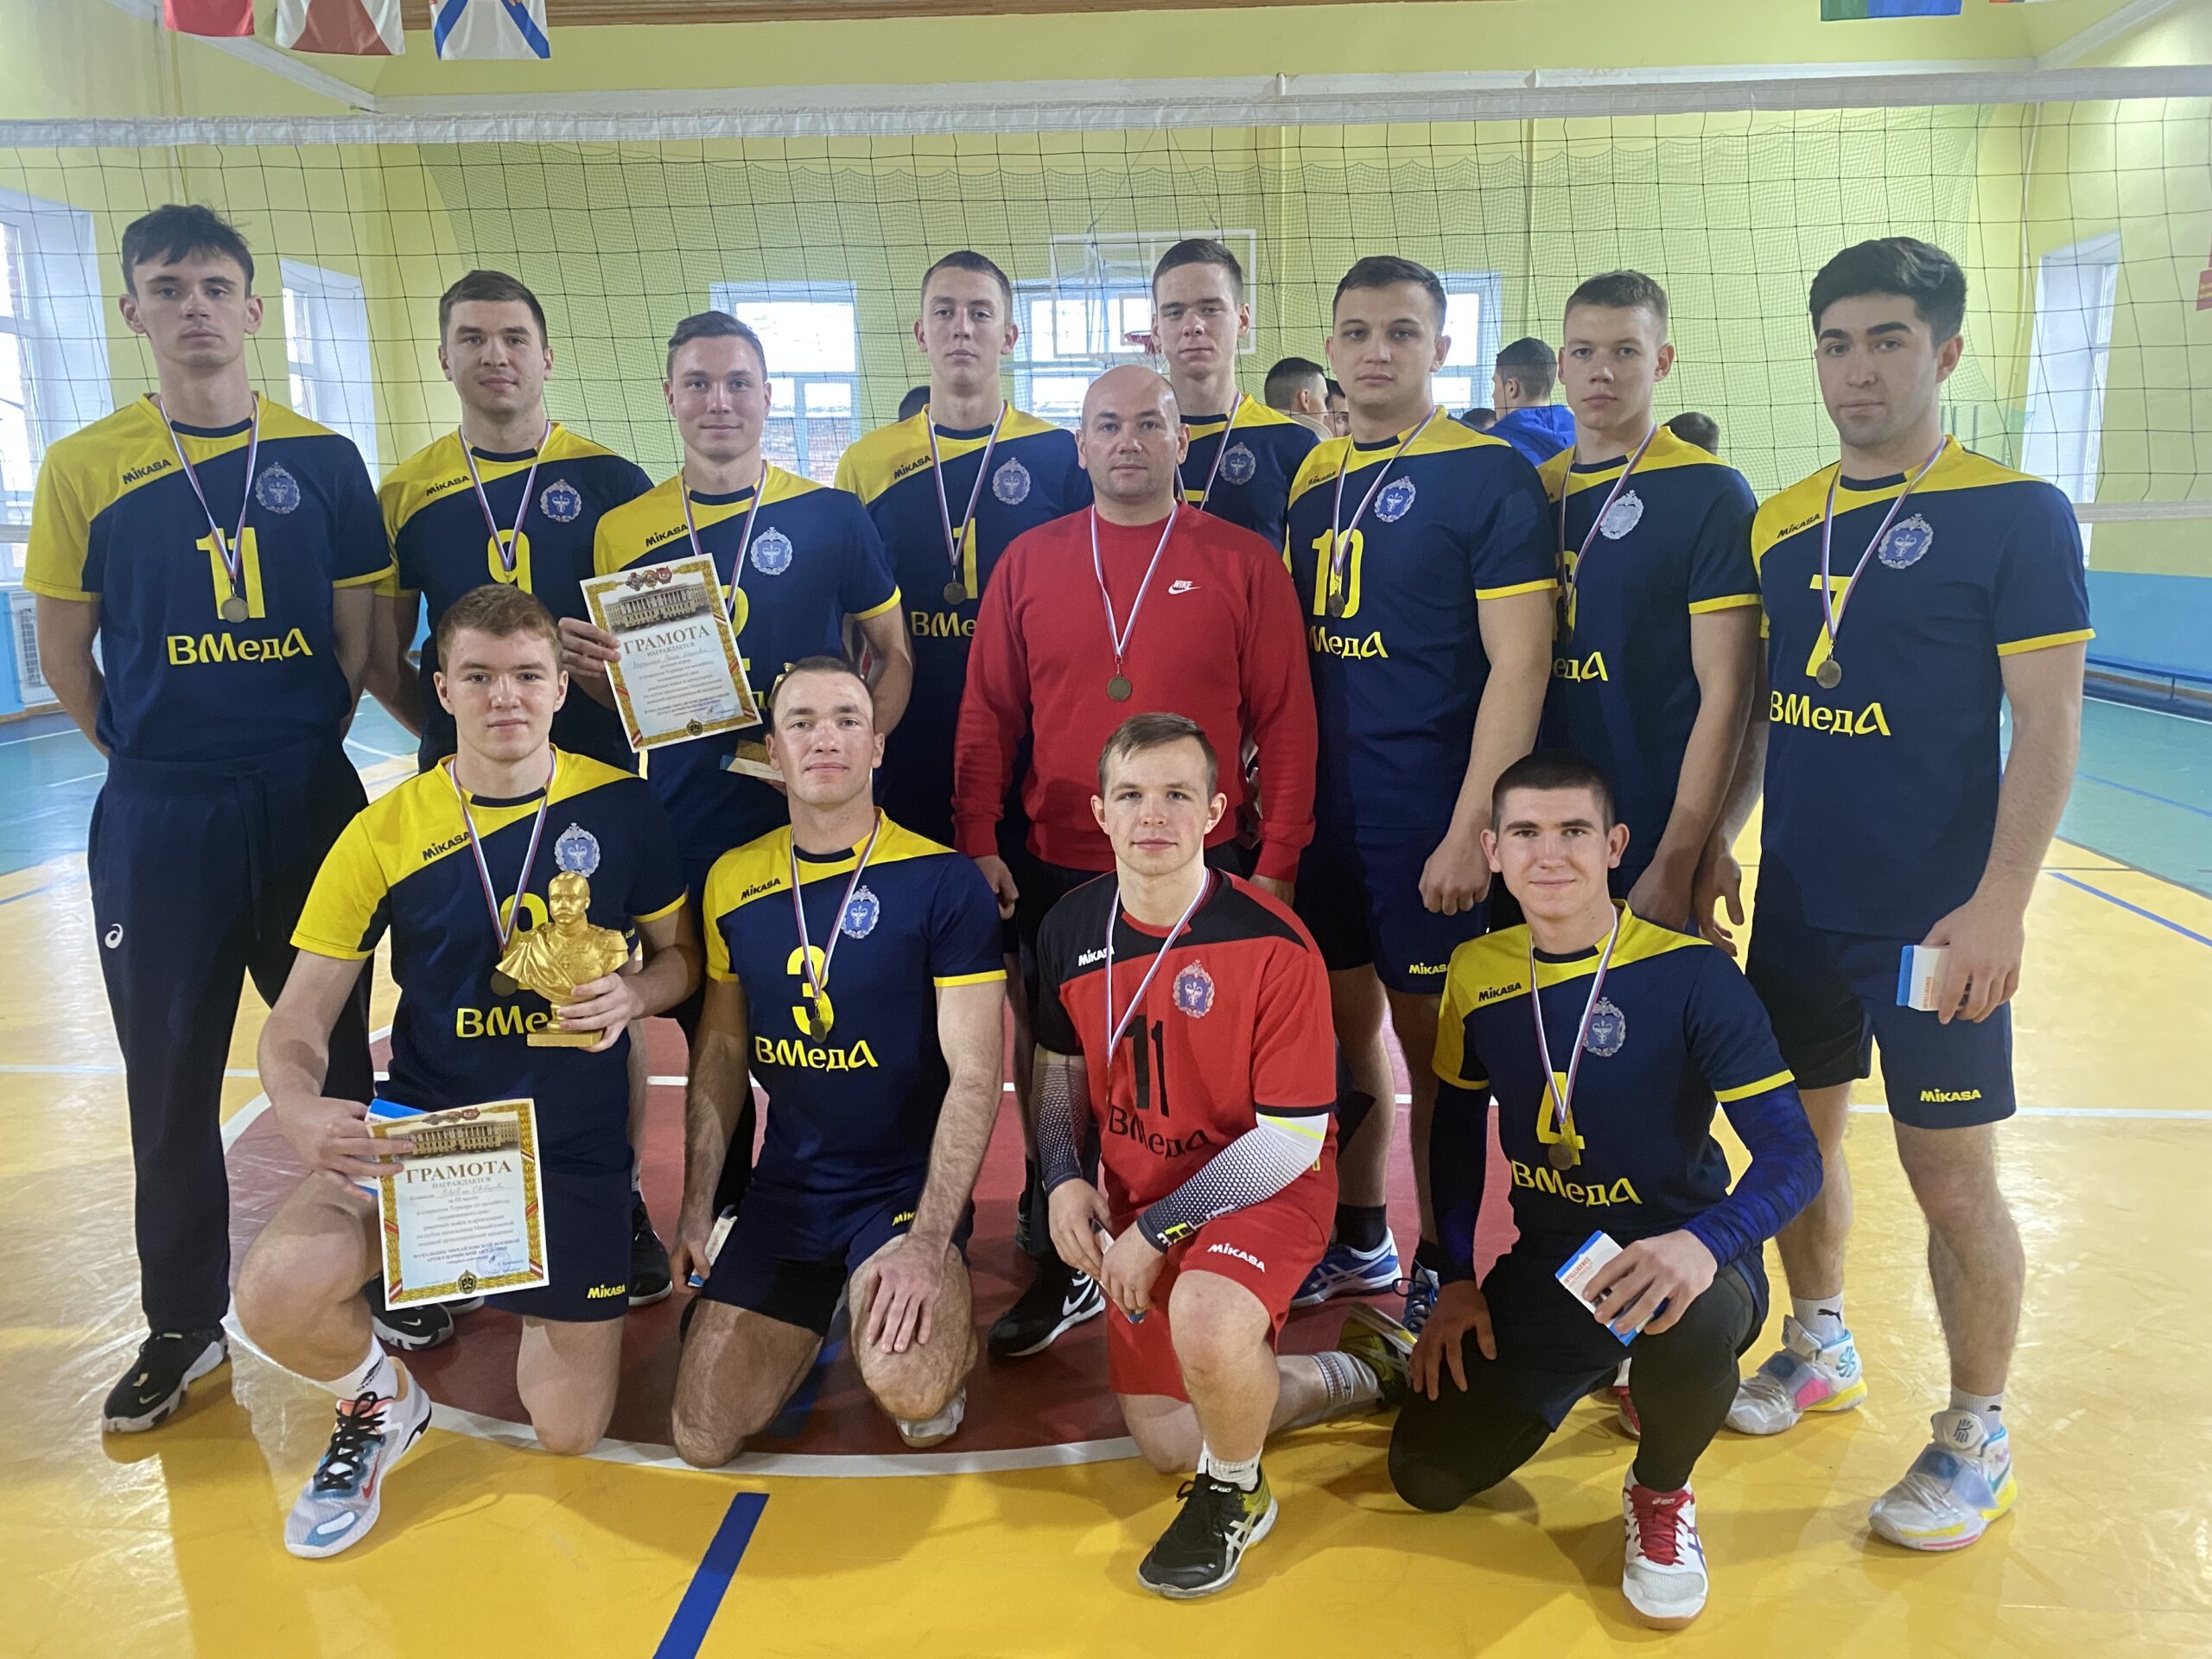 Cборная академии приняла участие в открытом турнире по волейболу, посвященном дню ракетных войск и артиллерии